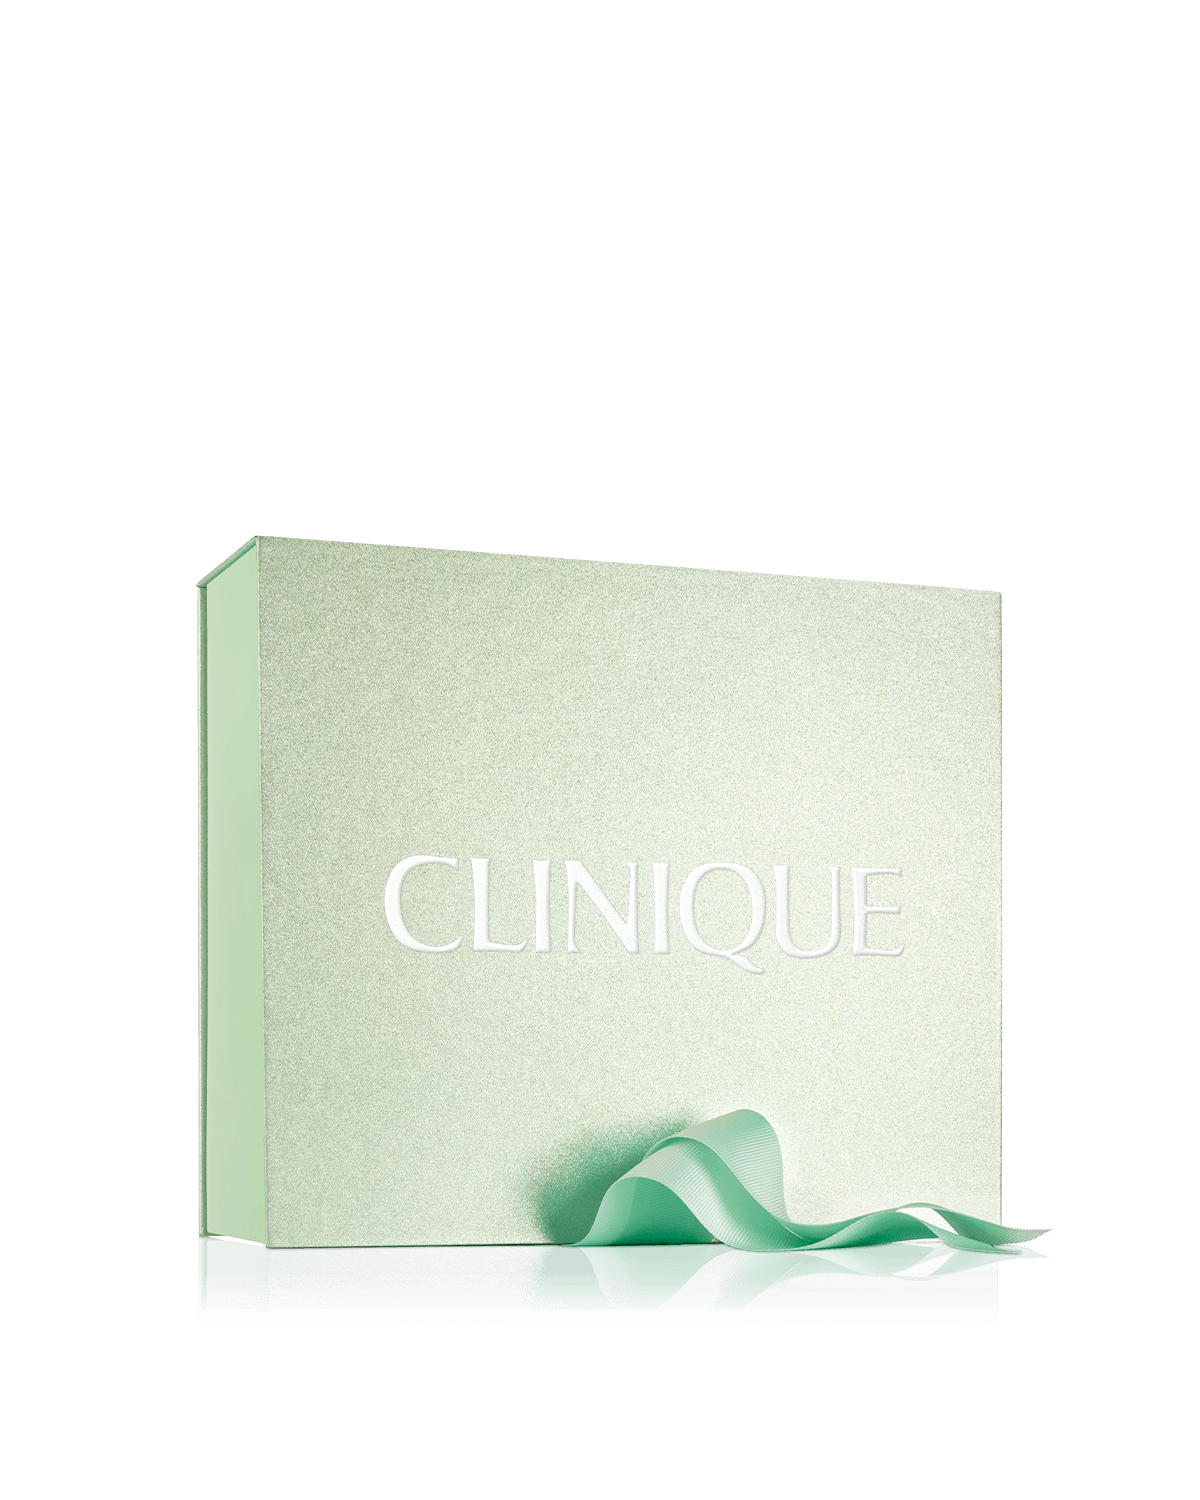 Clinique Green Glitter Gift Box